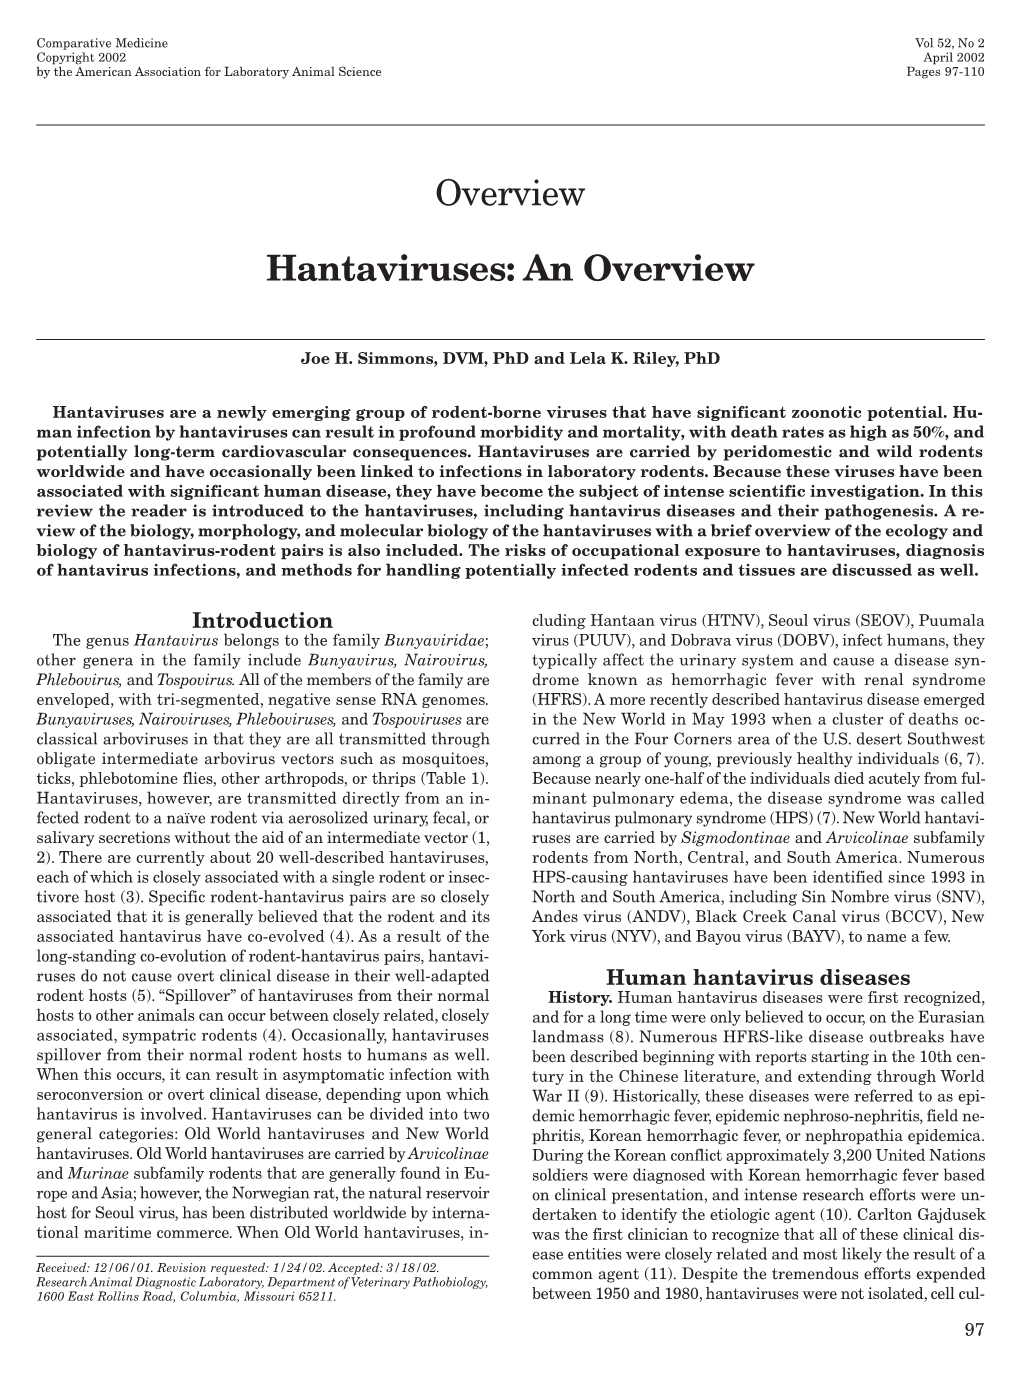 Hantaviruses: an Overview